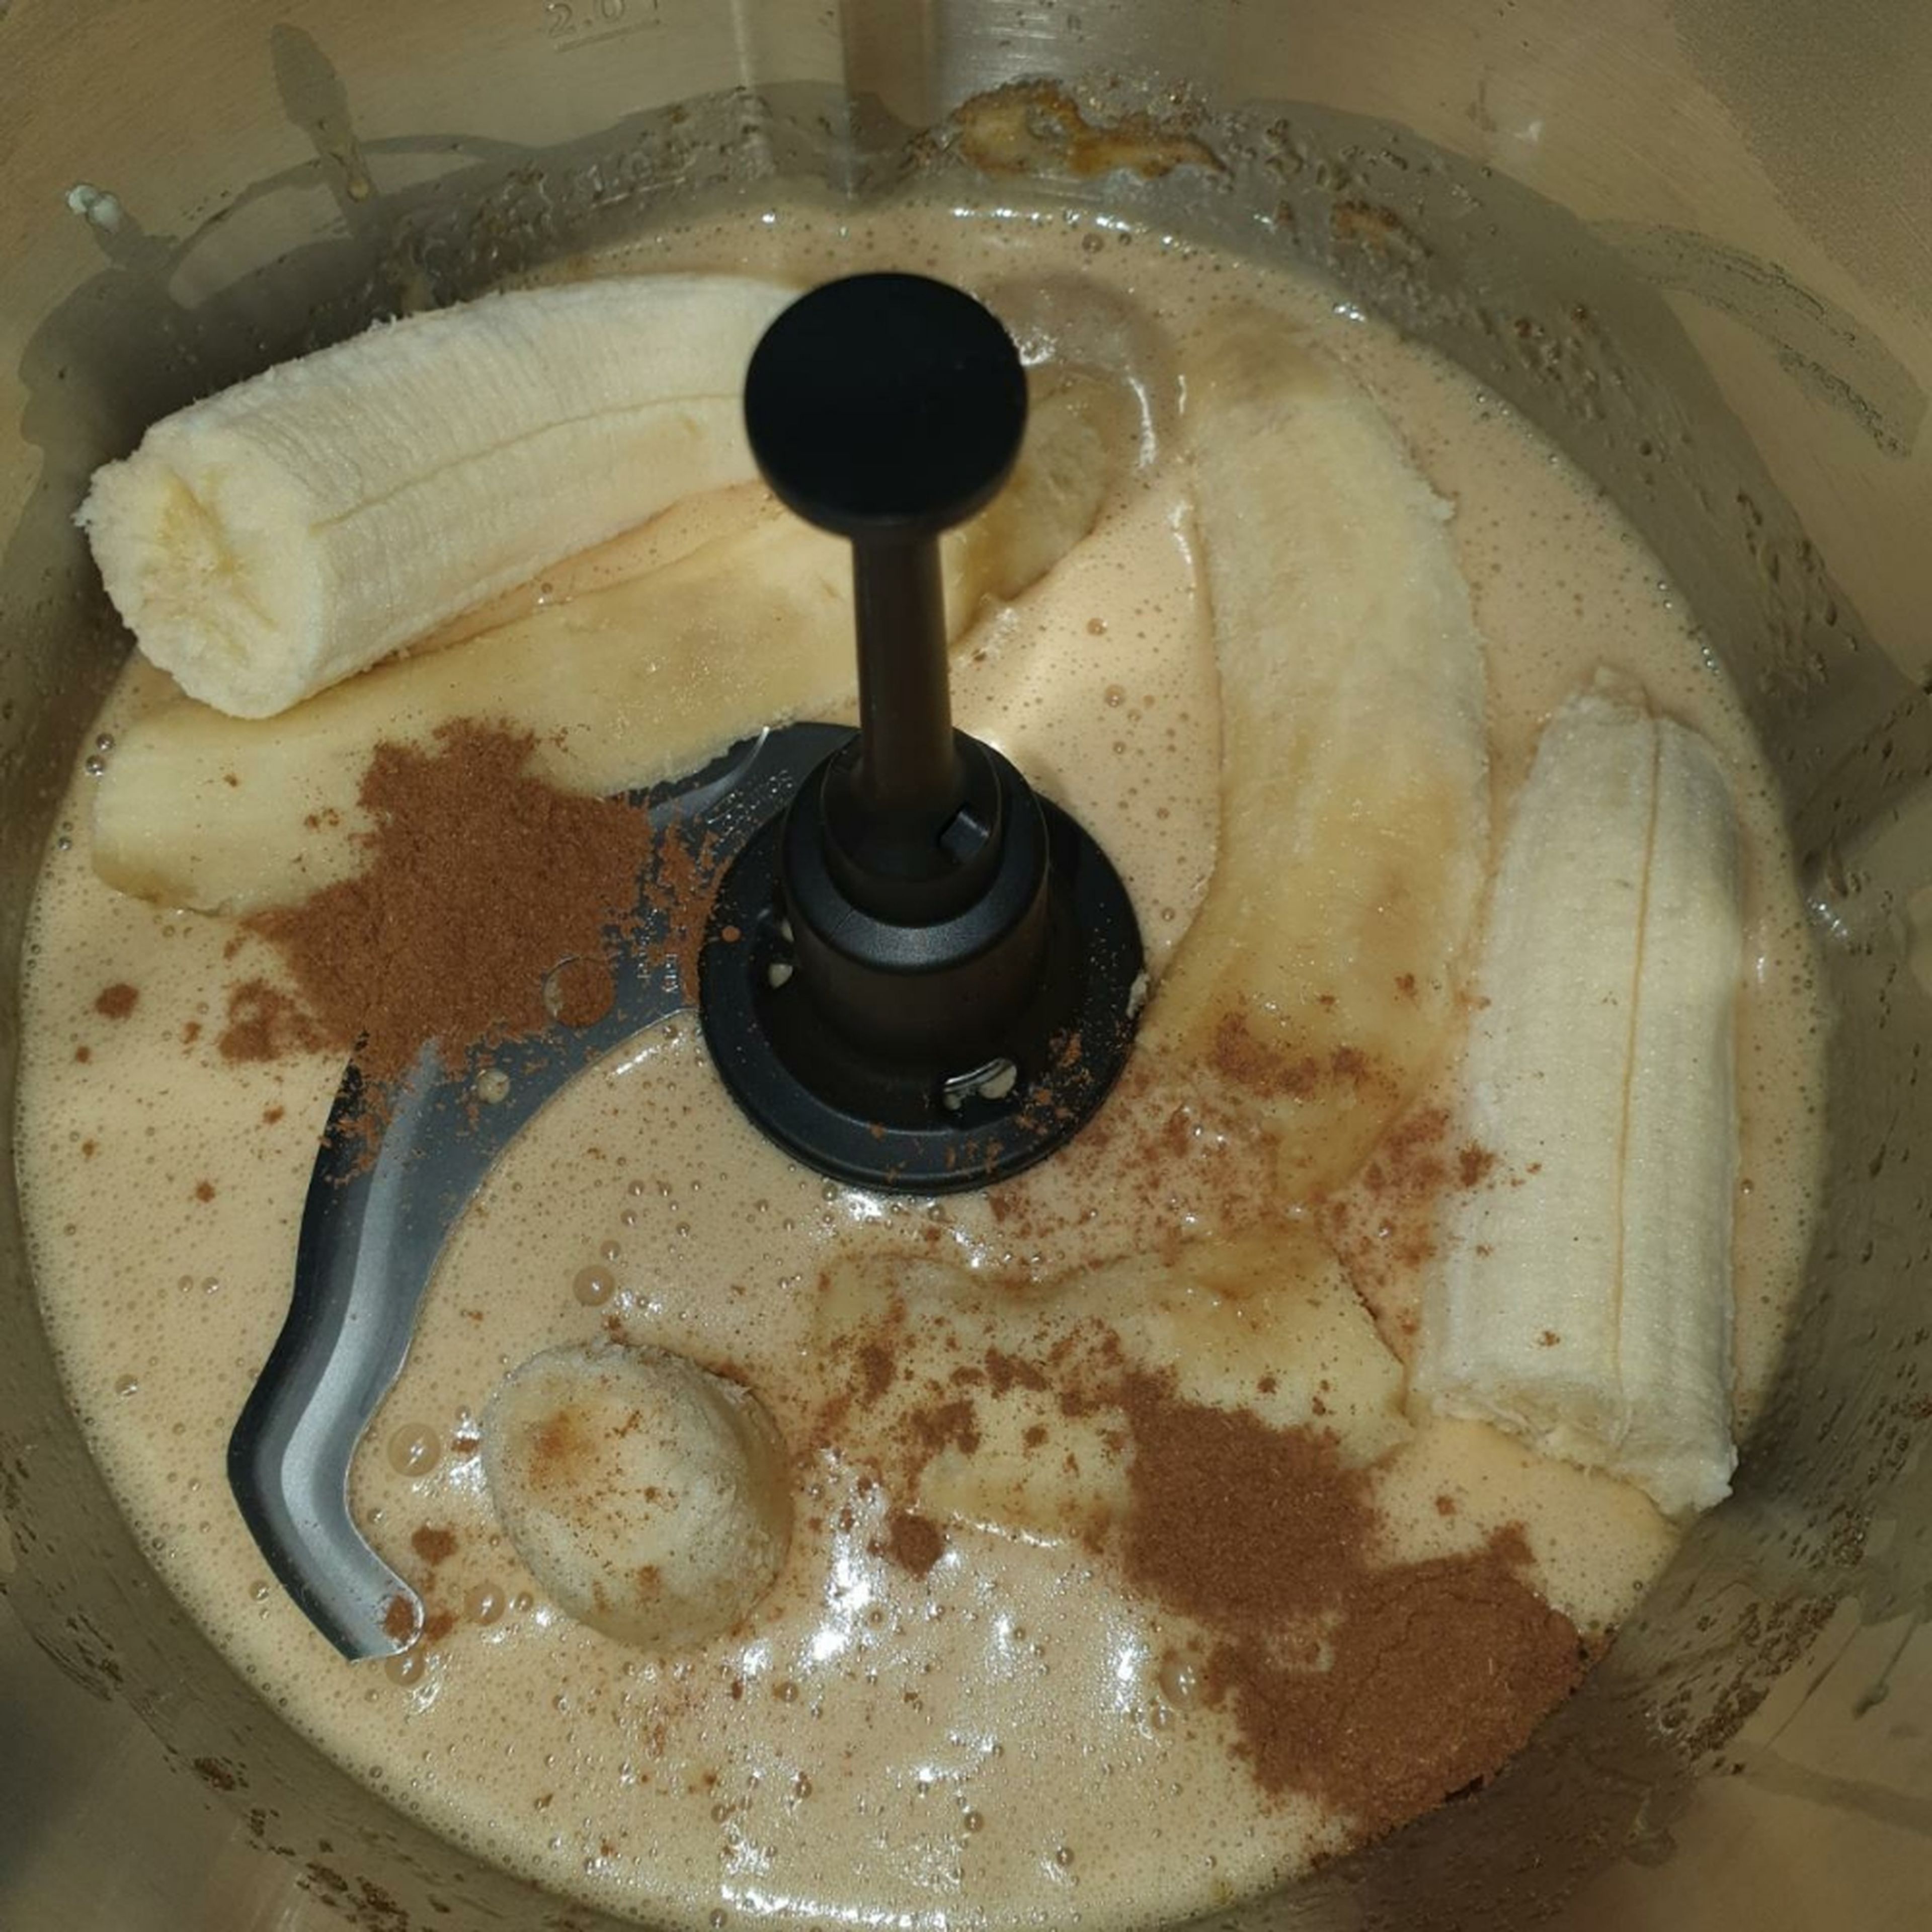 Das Universalmesser einsetzen, 3 der 4 Bananen und den Zimt hinzugeben, anschließend zerkleinern (Universalmesser | Stufe 11 | 1 Min.).